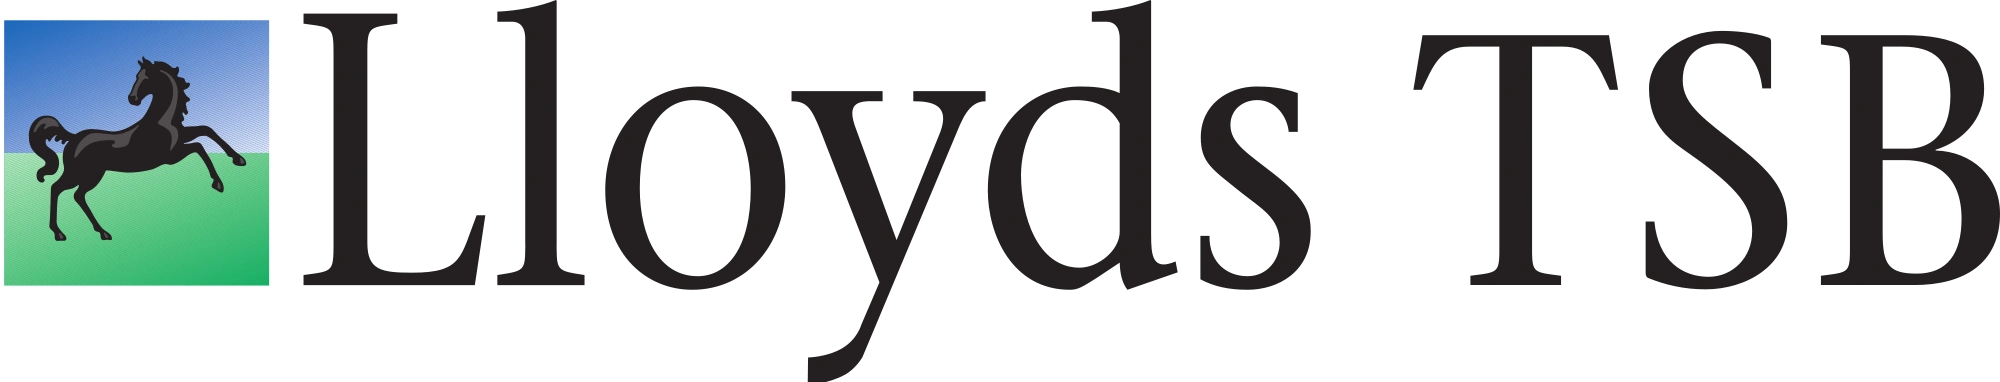 logo_2000px-Lloyds_tsb_logo.svg